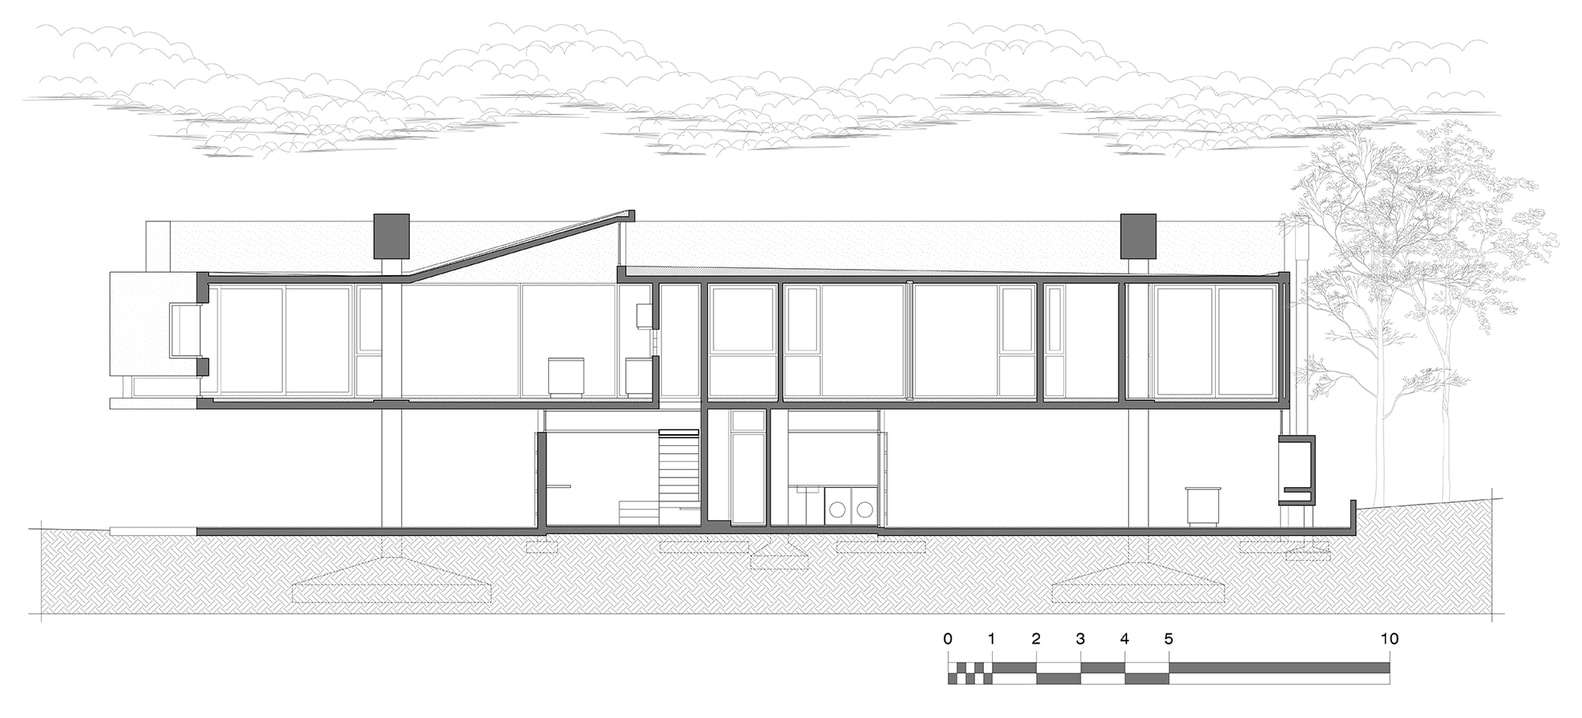 front elevation architectural sketch - Bischell Construction Ltd